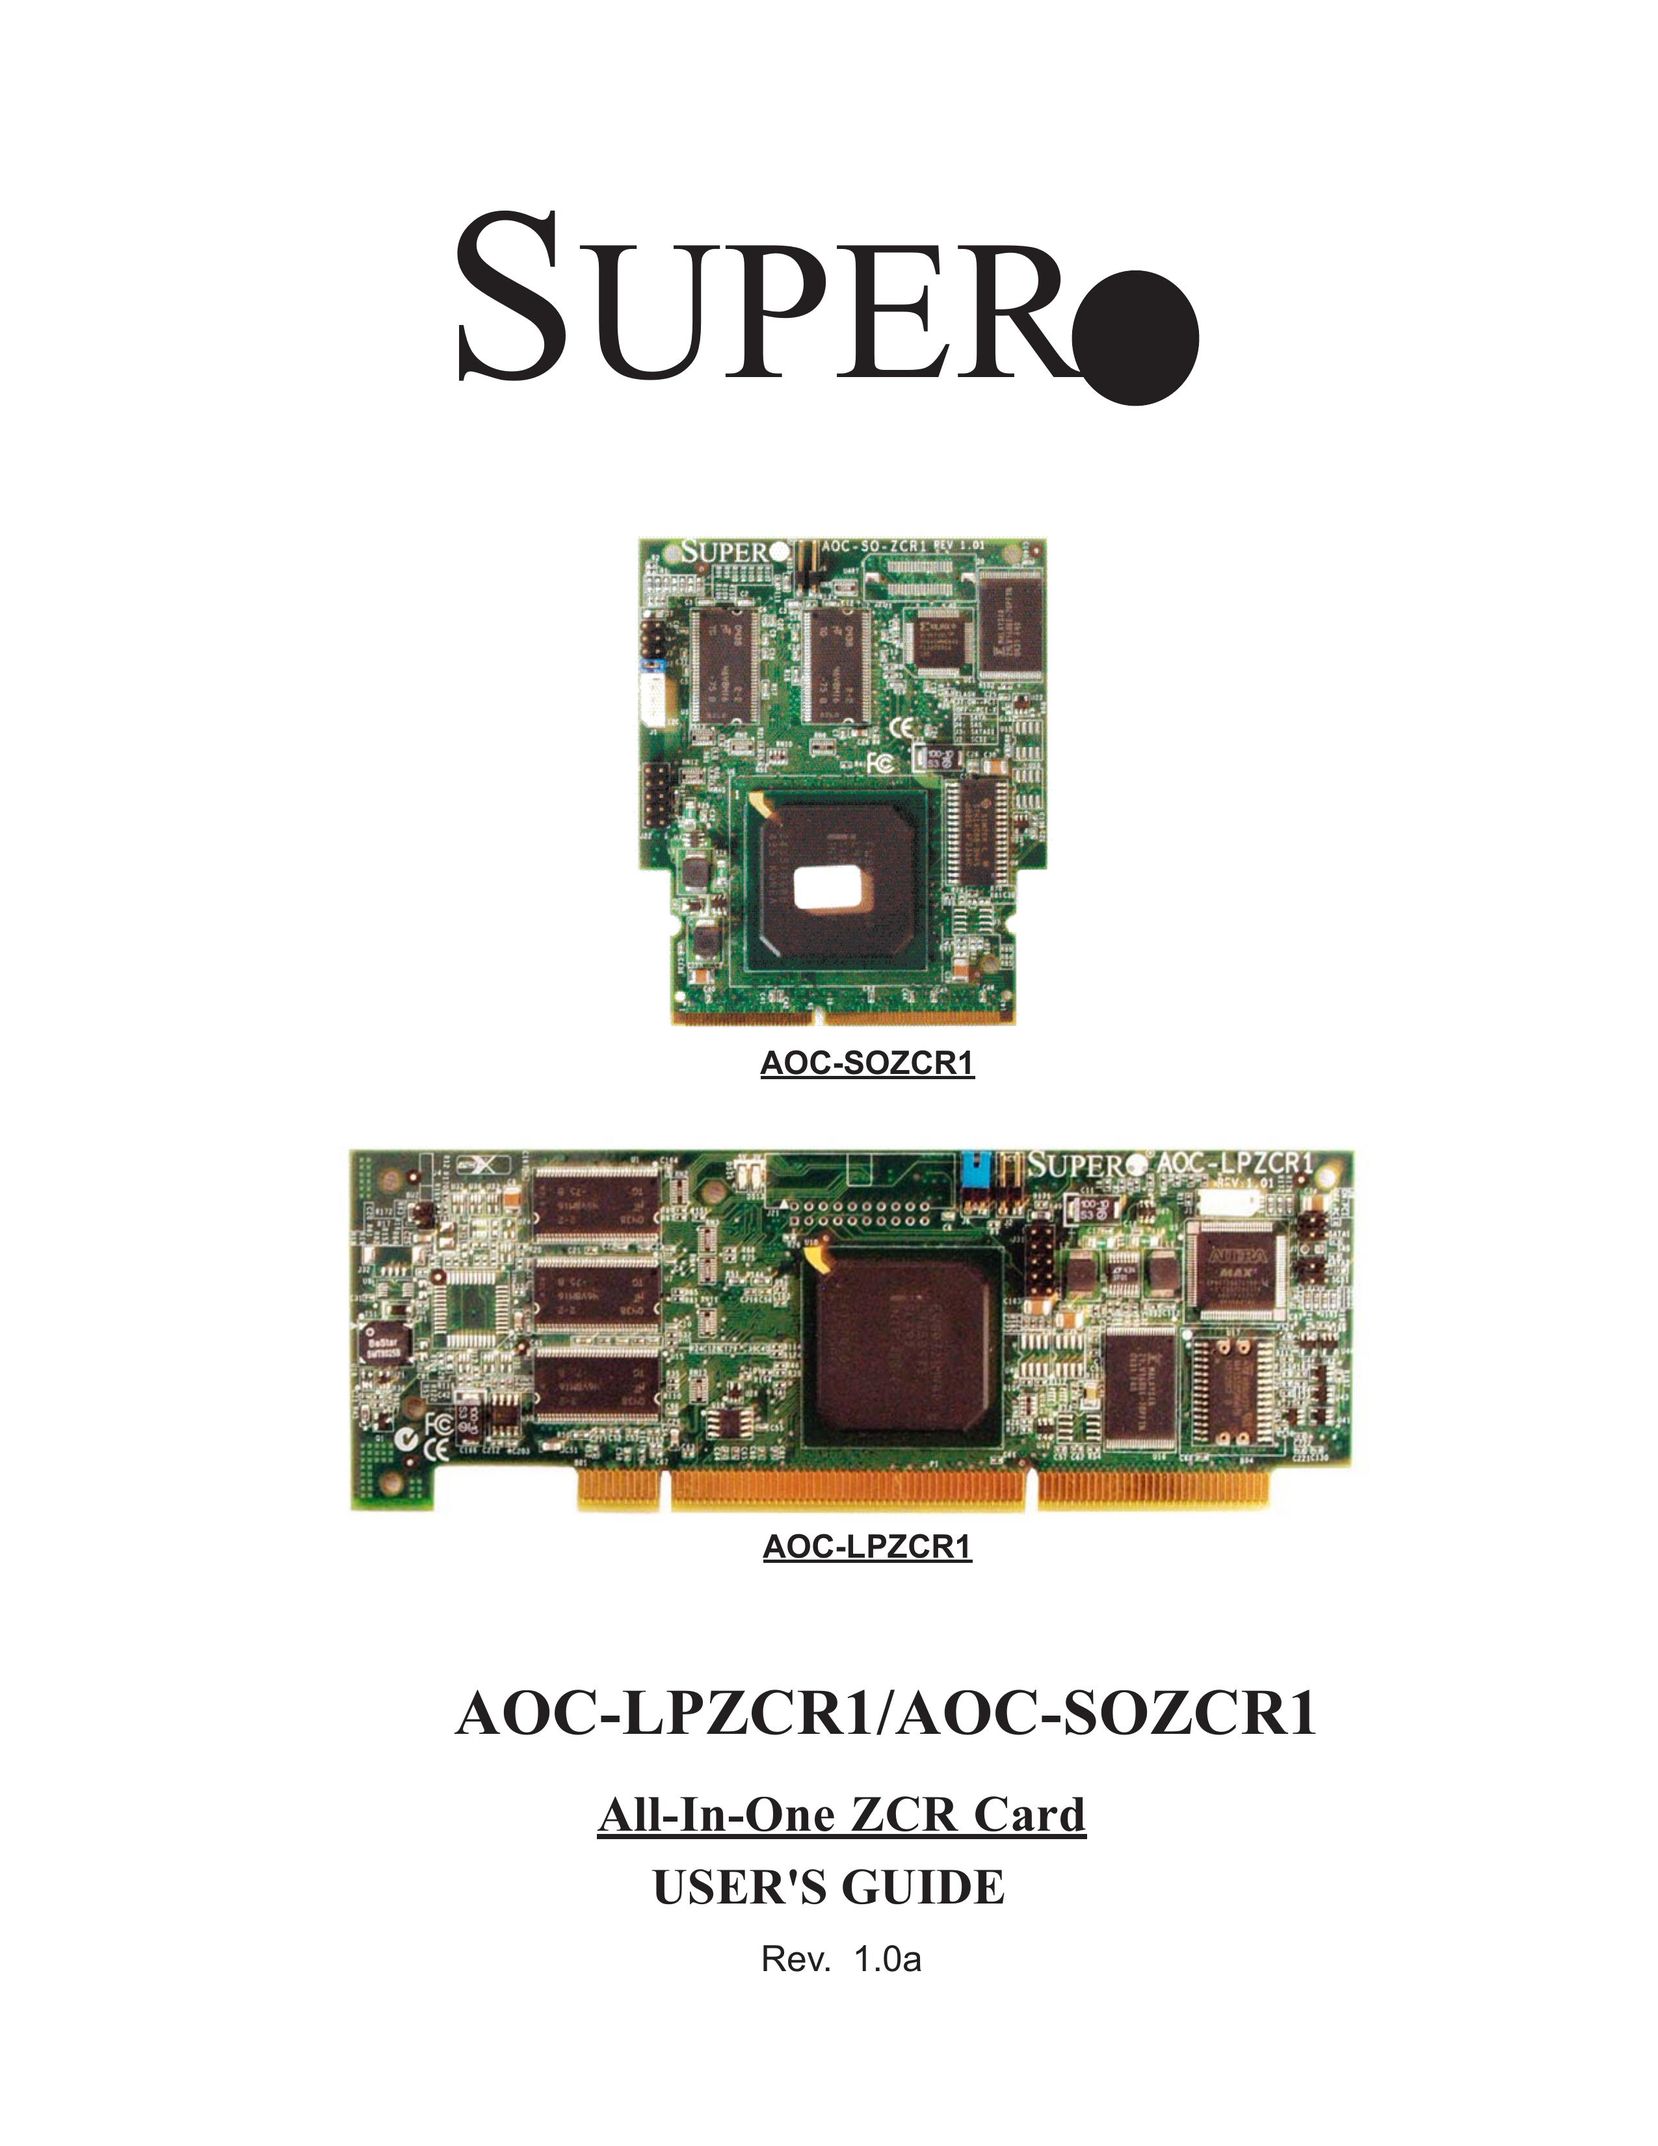 SUPER MICRO Computer AOC-SOZCR1 Computer Hardware User Manual